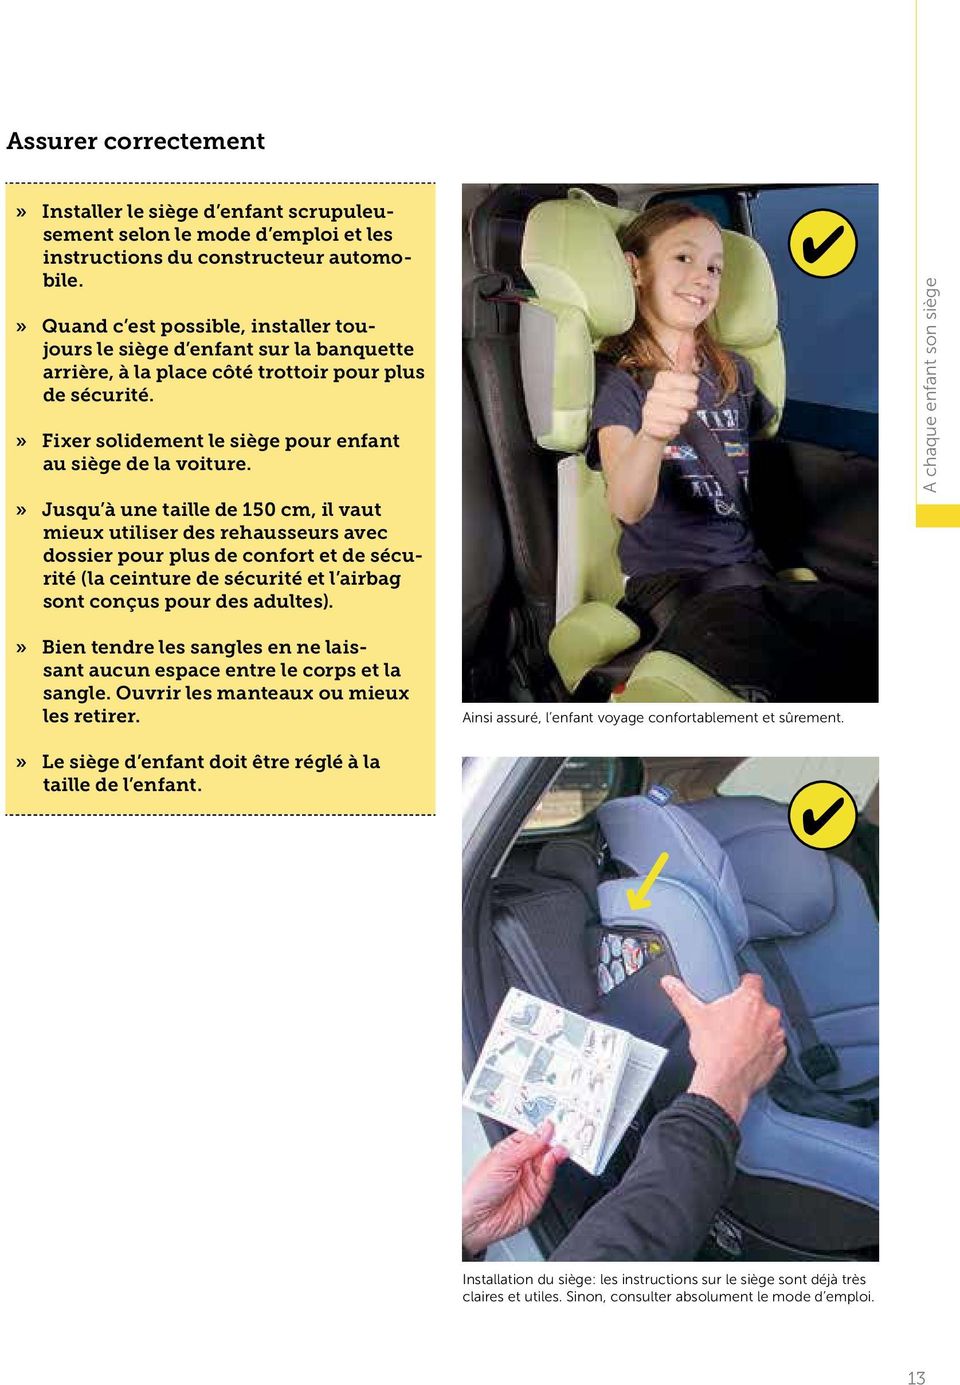 » Jusqu à une taille de 150 cm, il vaut mieux utiliser des rehausseurs avec dossier pour plus de confort et de sécurité (la ceinture de sécurité et l airbag sont conçus pour des adultes).